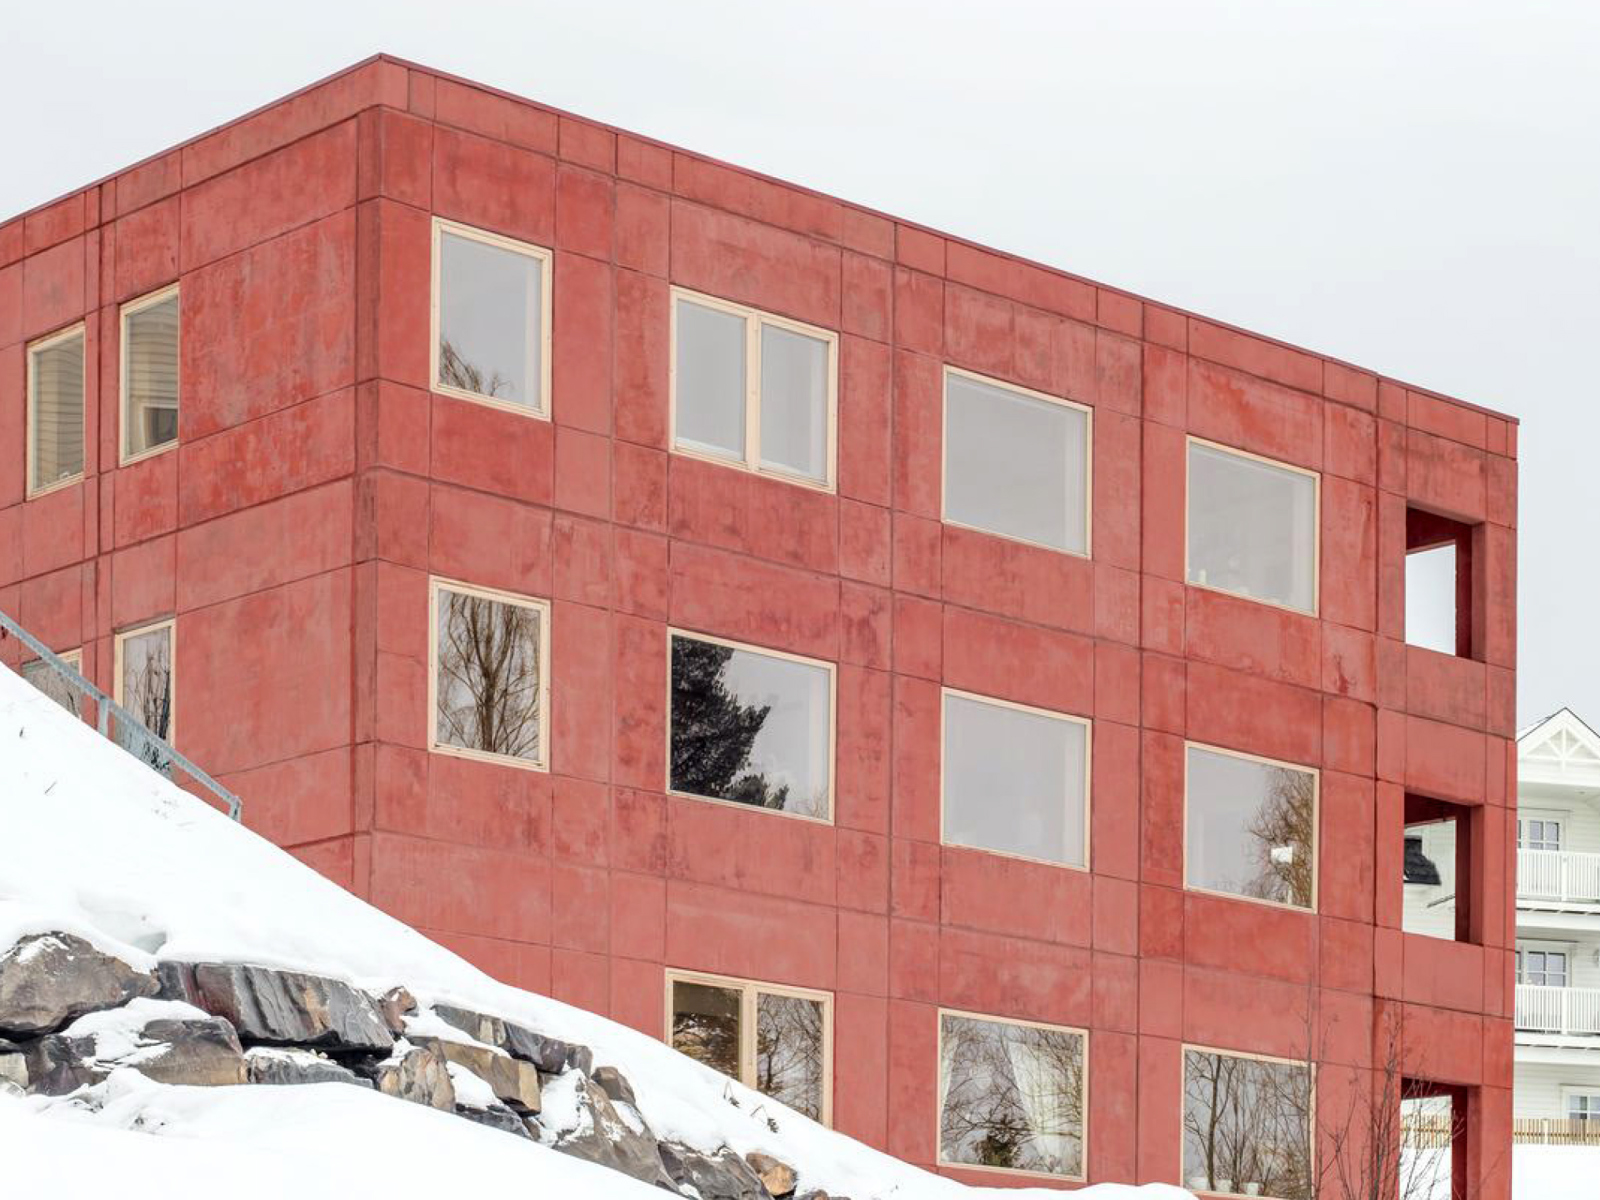 Rødt murbygg i snøen